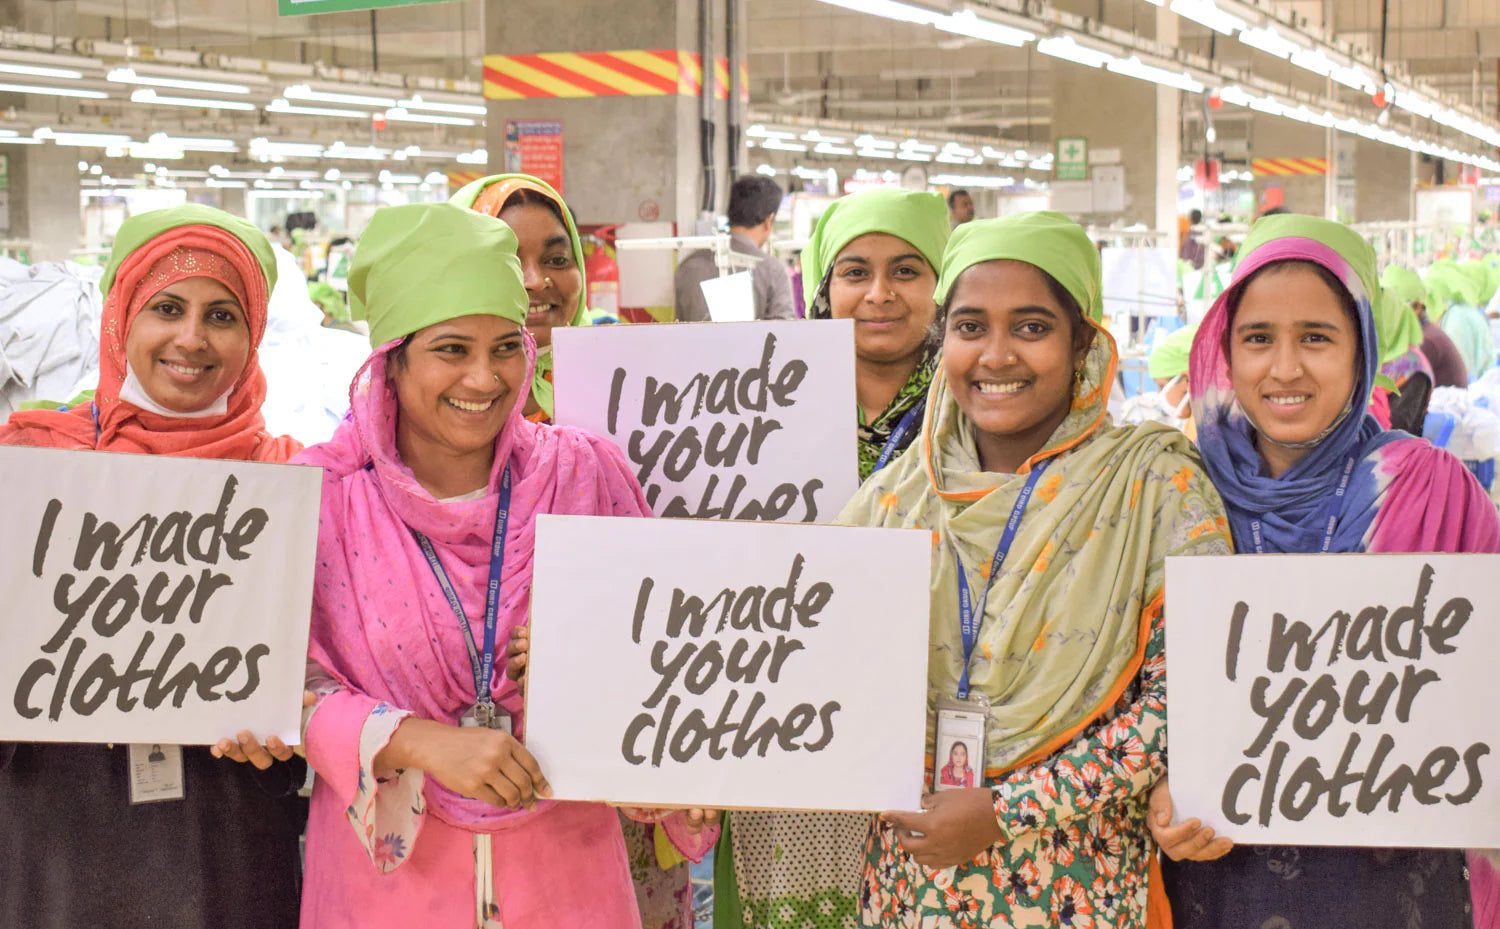 Bildquelle: Stanley & Stella: Textilarbeiterinnen in Bangladesch zeigen voller Stolz Schilder der Fashion Revolution Kampagne "I made your clothes". Sie sind die wahren Heldinnen hinter unserer Kleidung.